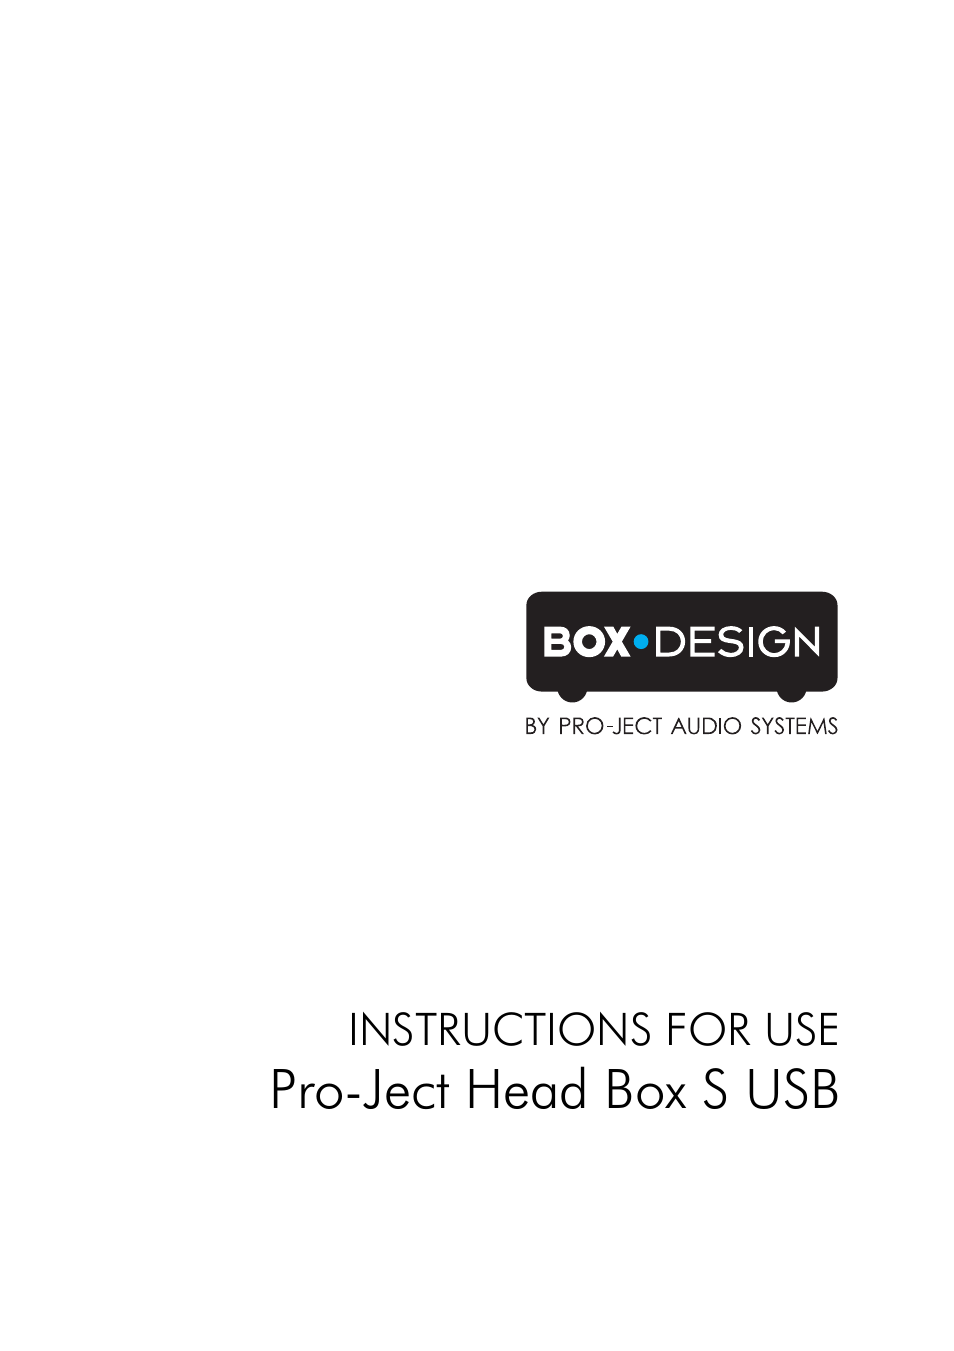 Head Box S USB